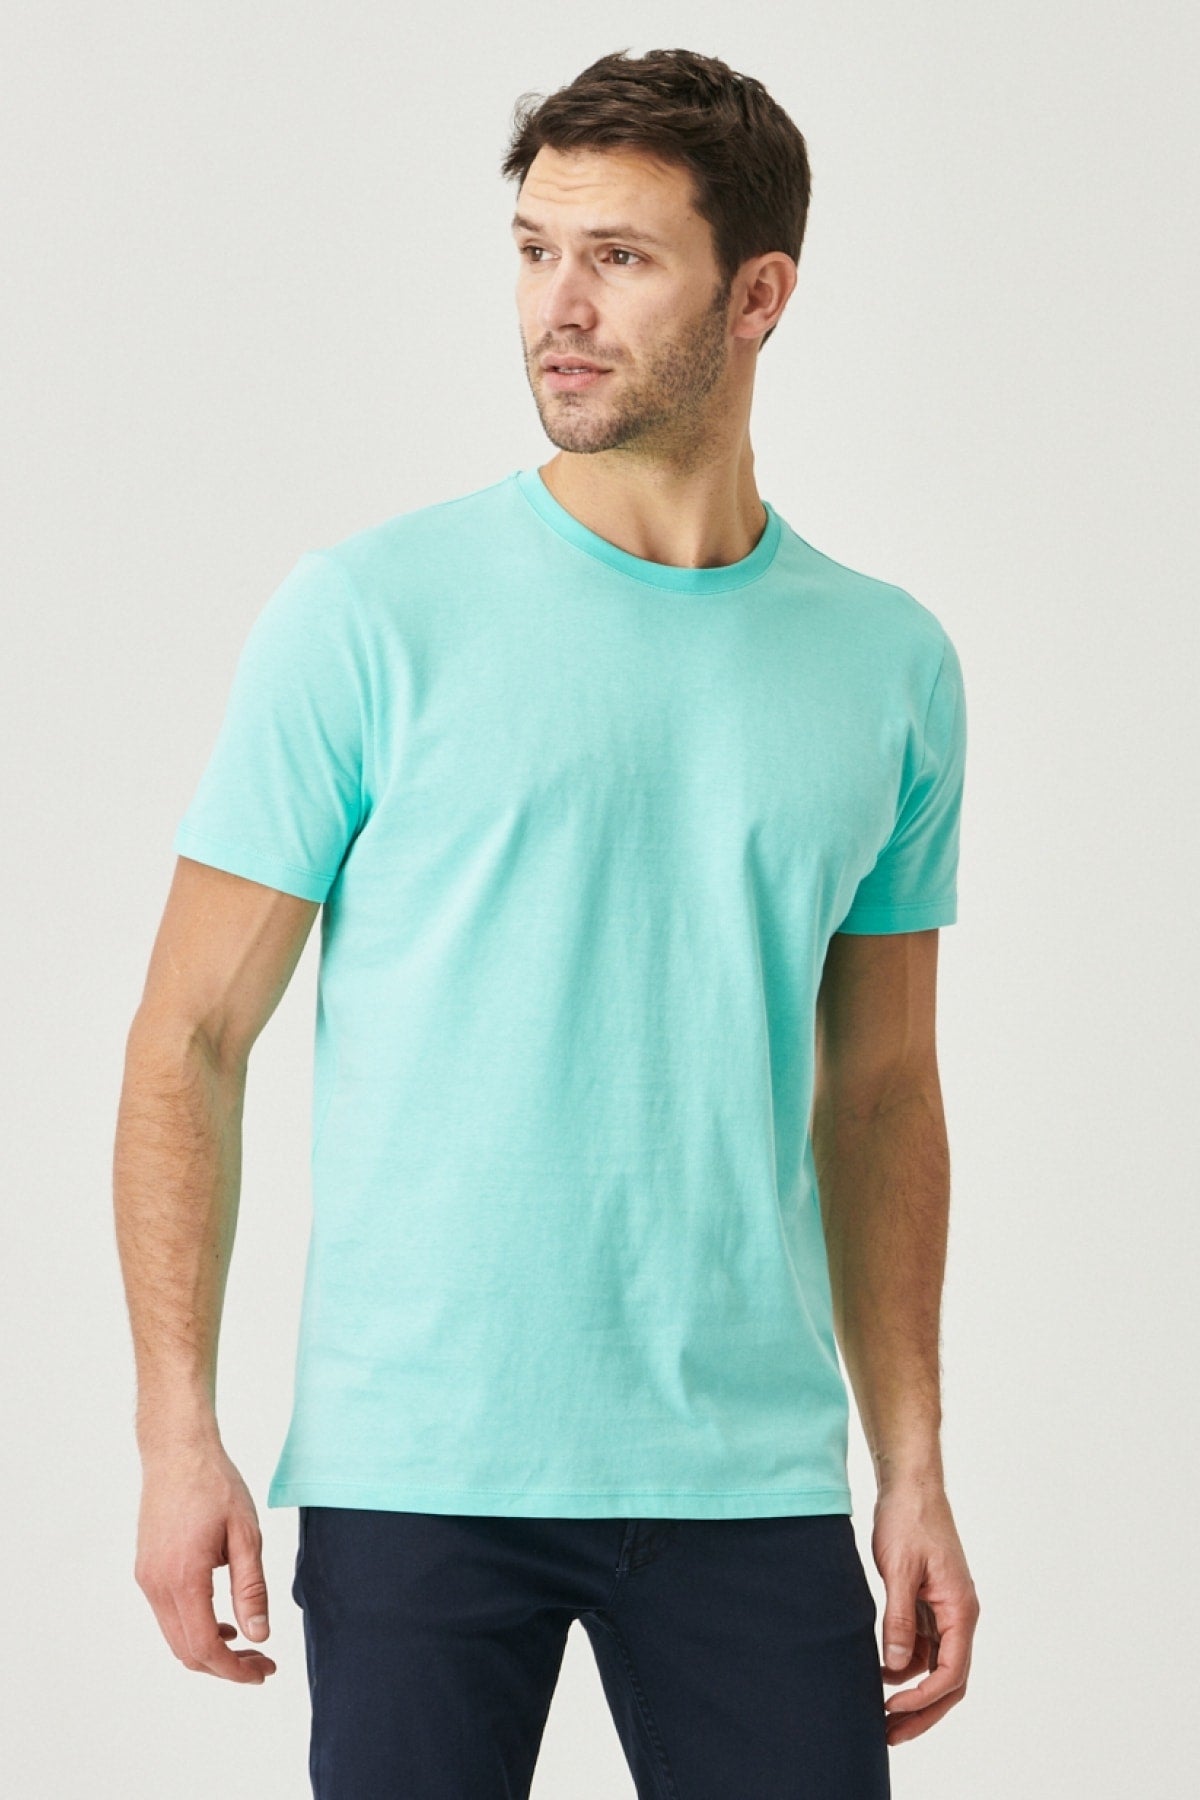  Мужская бирюзовая футболка Slim Fit из 100% хлопка с круглым вырезом и короткими рукавами